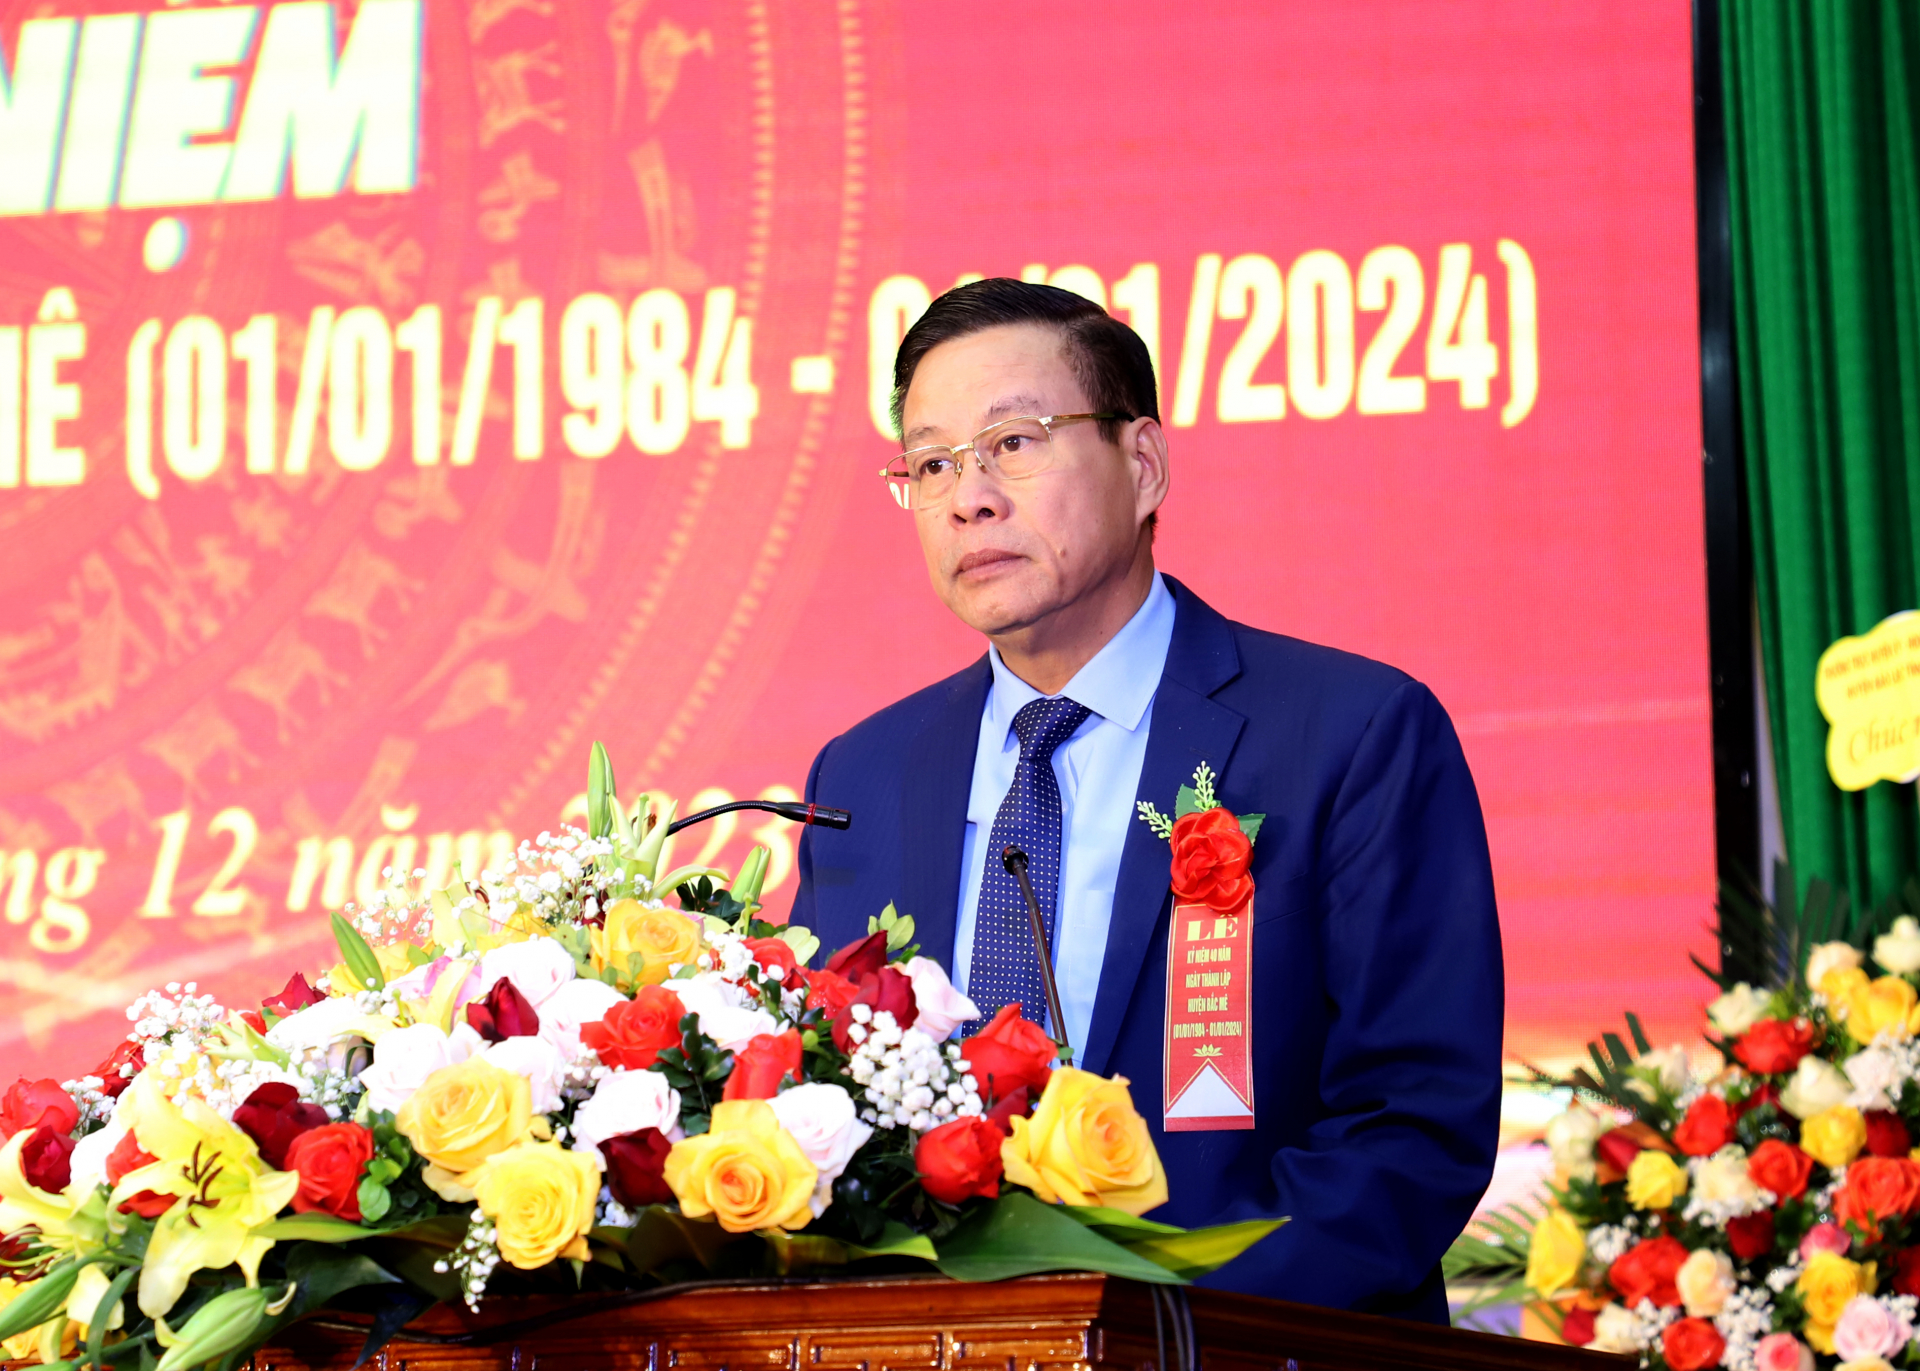 Lễ kỷ niệm 40 năm thành lập huyện Bắc Mê - Báo Hà Giang điện tử